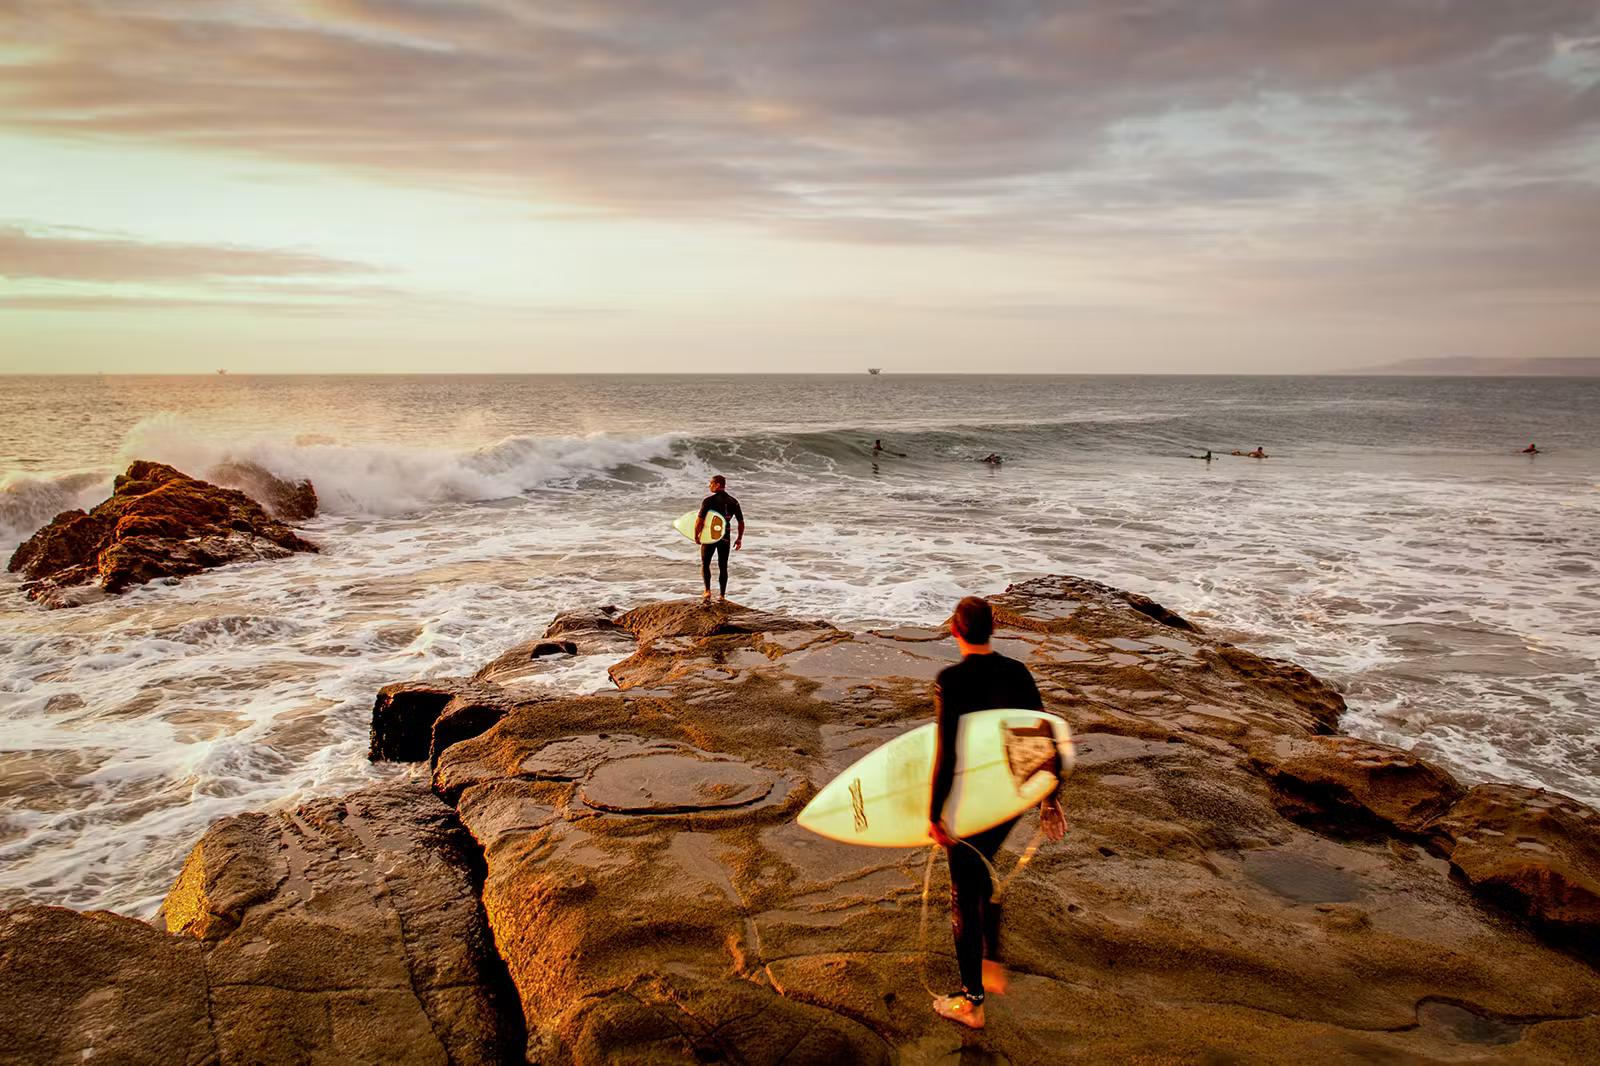 Två surfare går ut på en rostfärgad sten mot bränningen vid solnedgången.  Det finns flera andra surfare redan i havet.